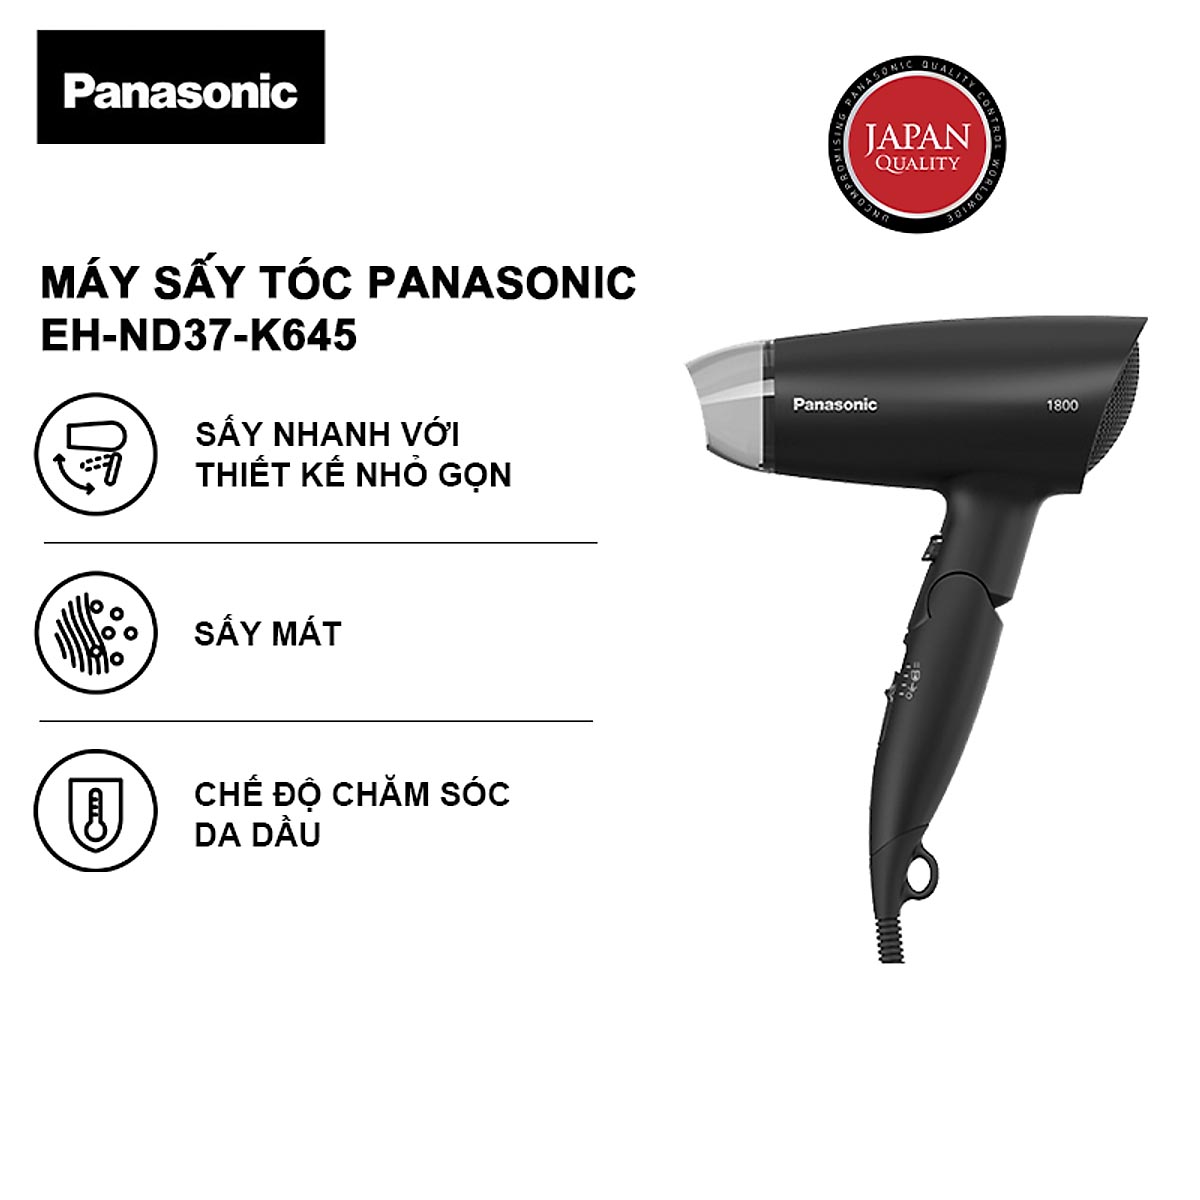 Máy sấy tóc gấp gọn Panasonic Thai Lan EH-ND37 công suất 1800W, hàng chính hãng